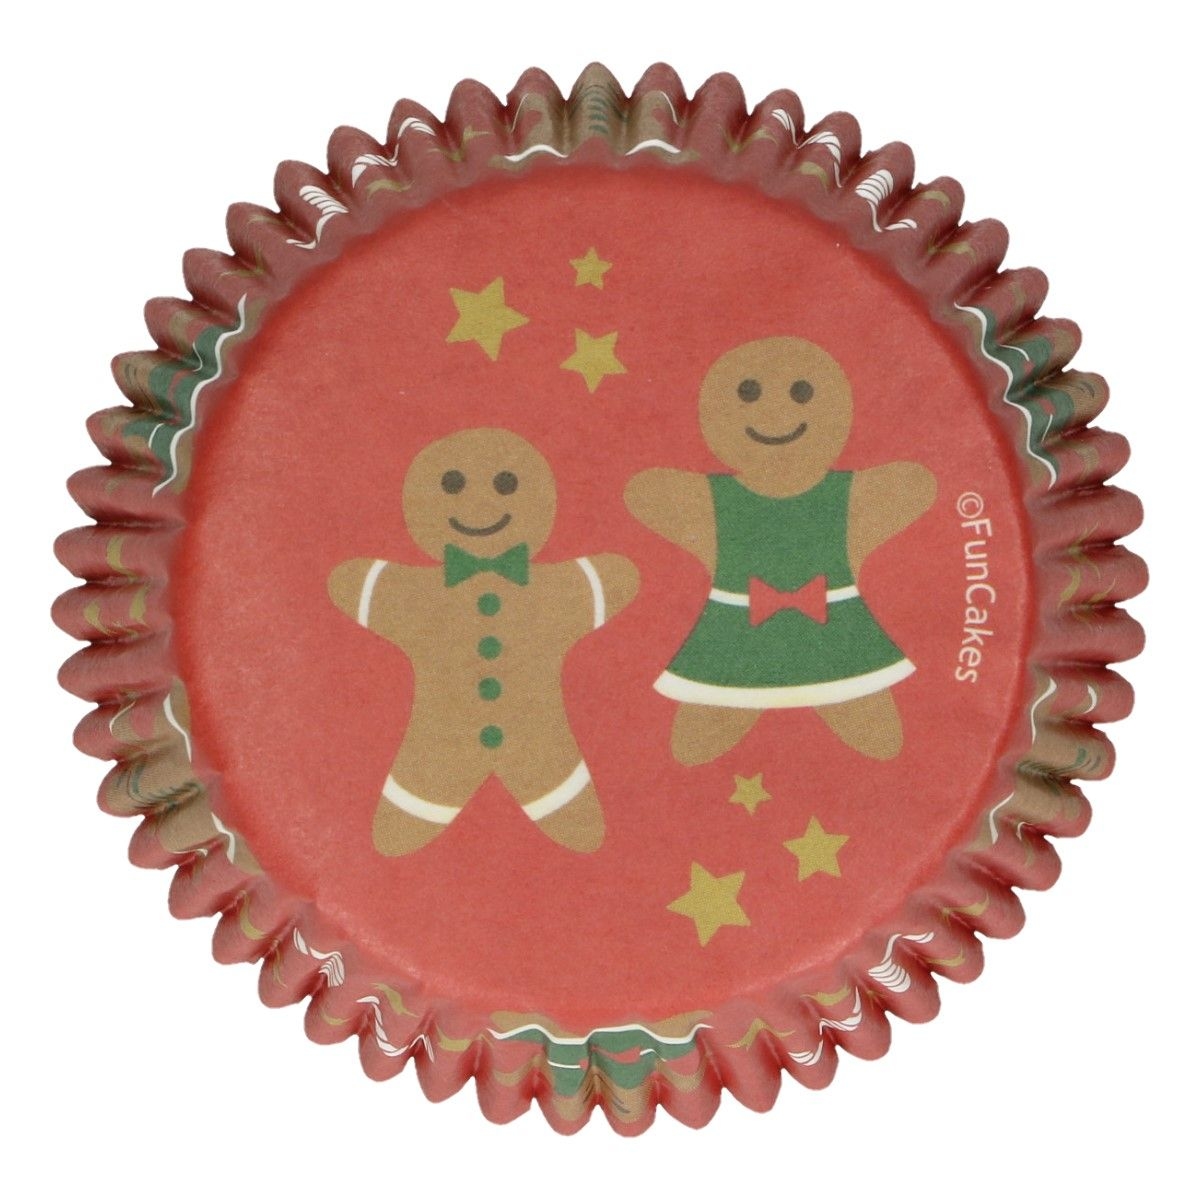 Caissettes à cupcakes Noel - bonhomme pain d'épice /48